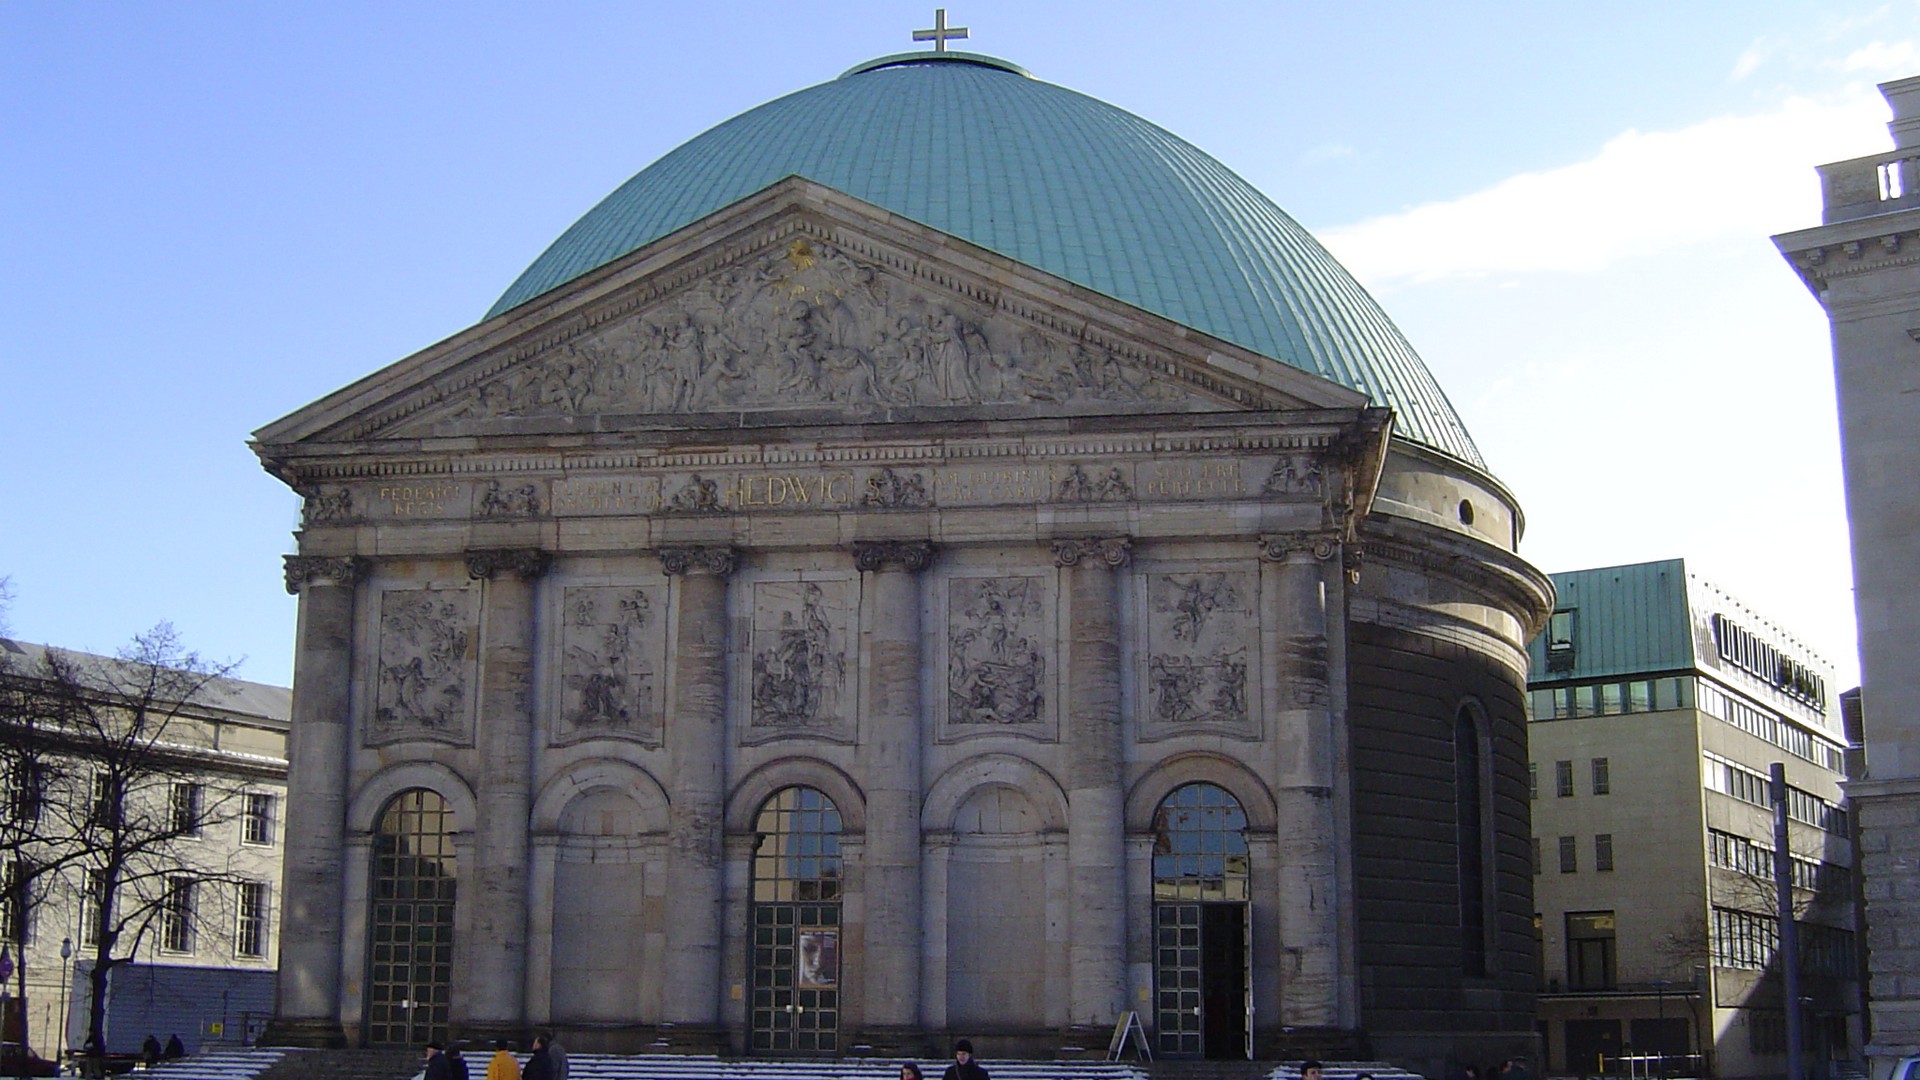 La cathédrale Ste Edwige de Berlin (photo Flickr CC BY-SA 2.0)